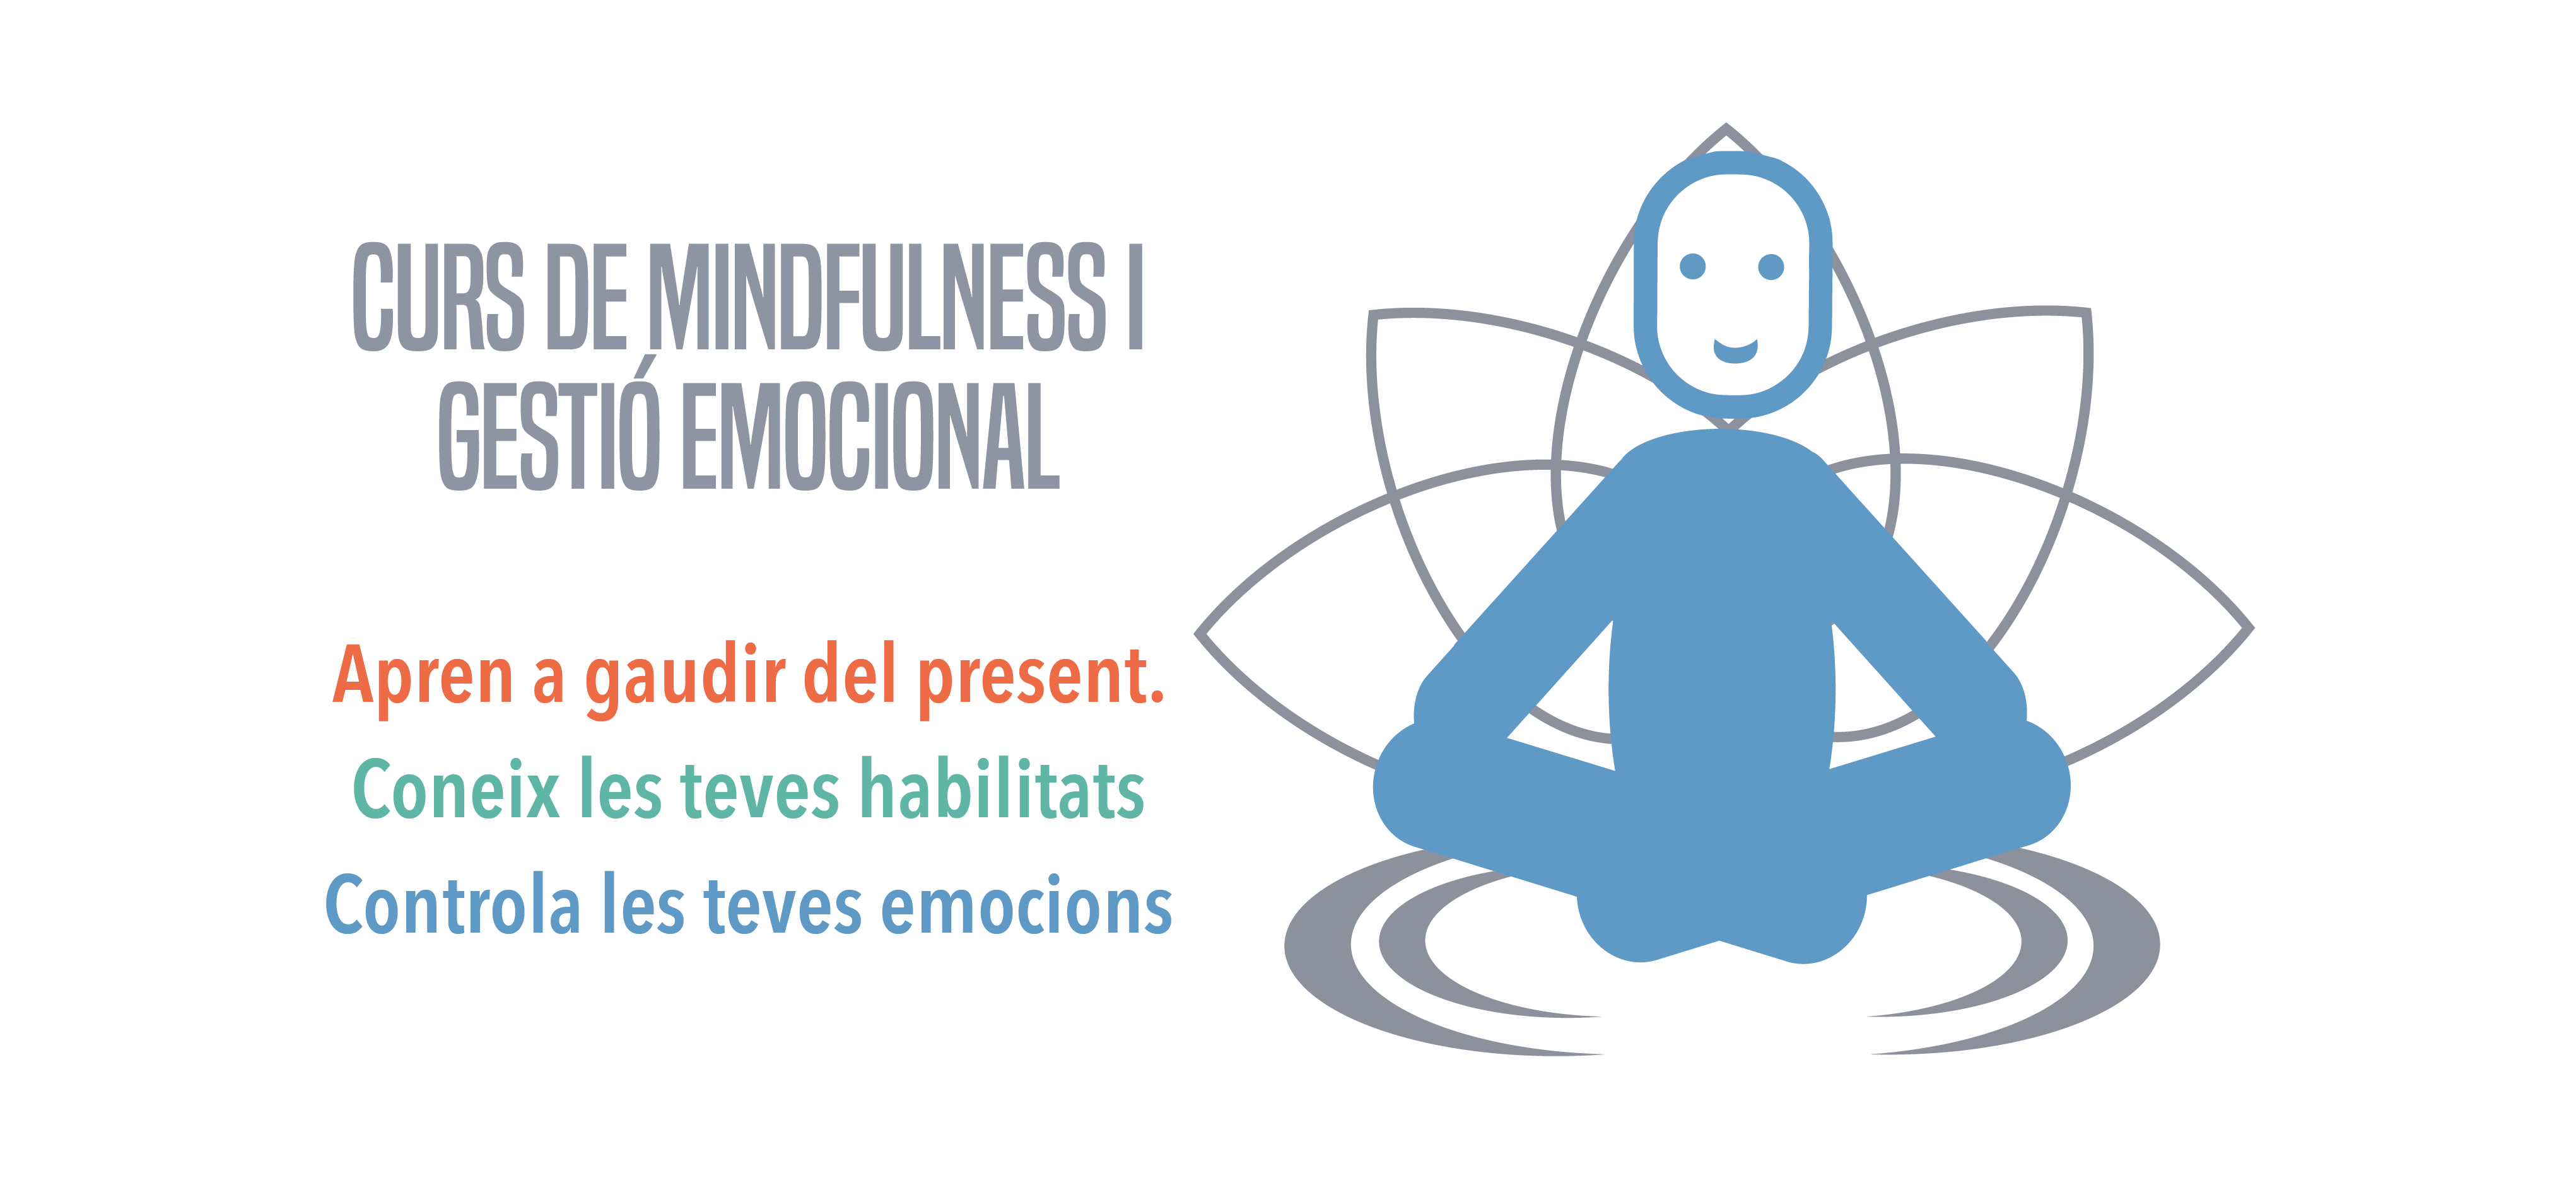 curs de mindfulness i gestió emocional vitruvi centre